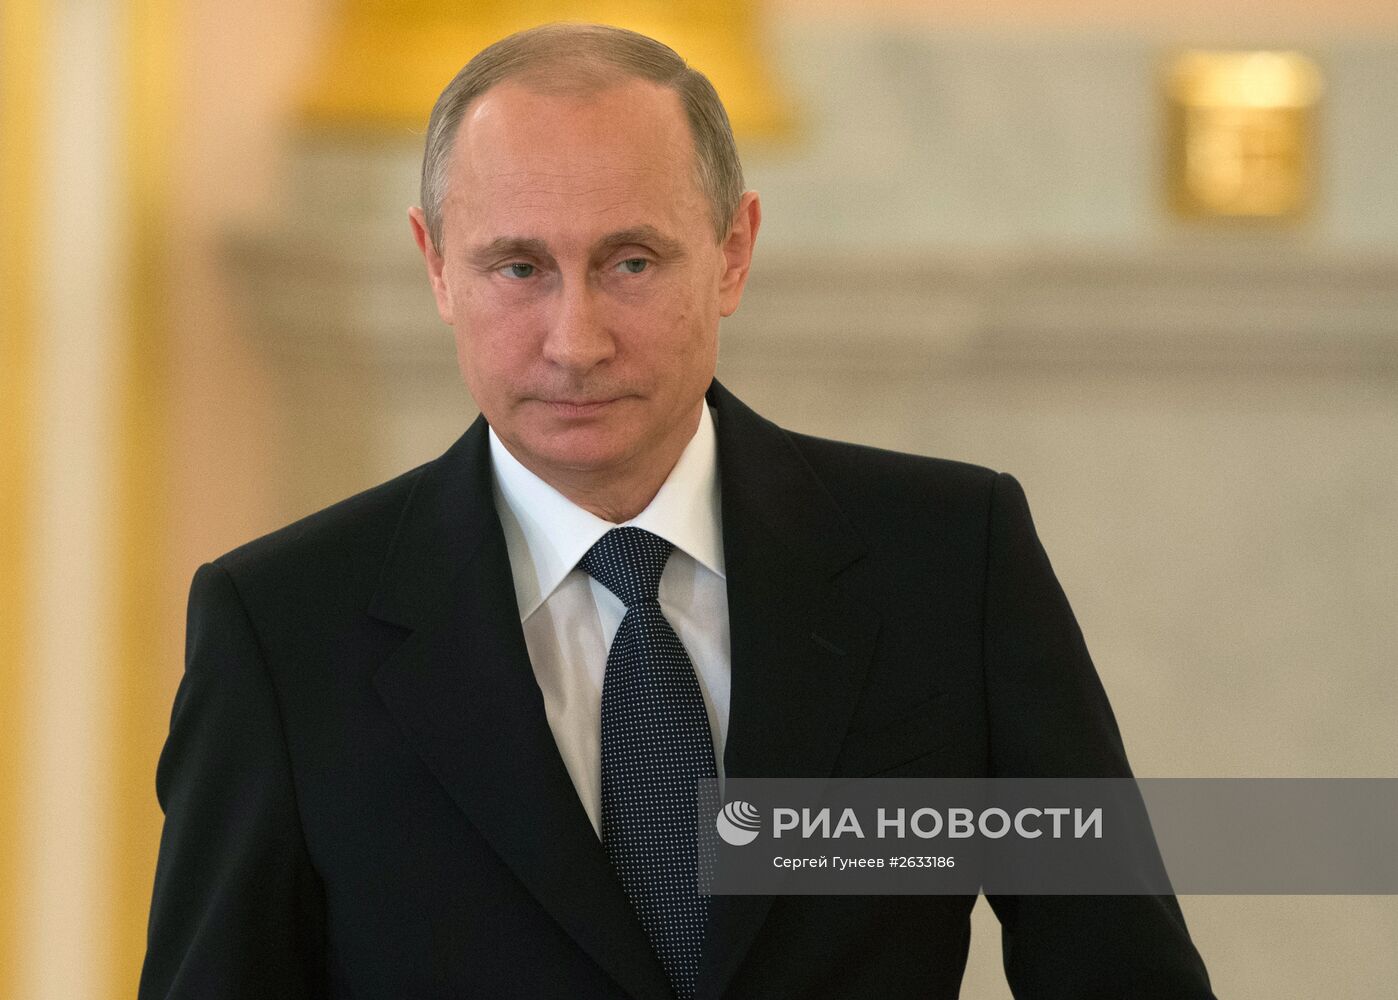 Вручение верительных грамот послами иностранных государств президенту РФ В.Путину